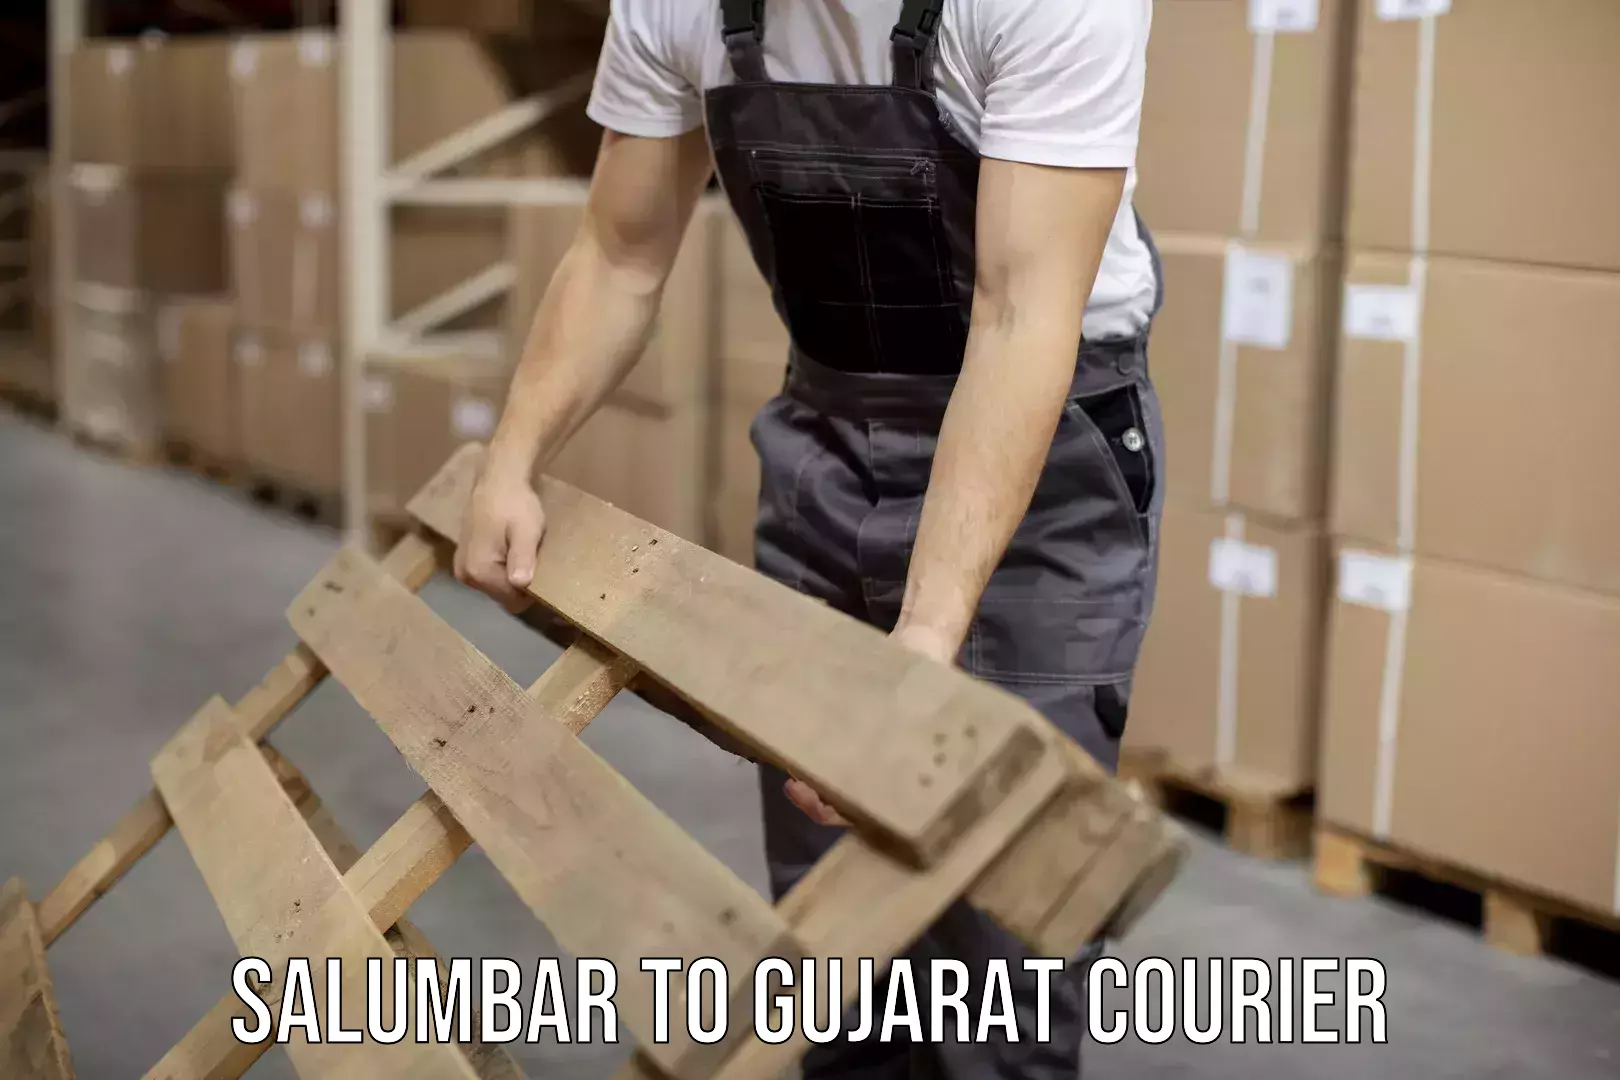 Cargo courier service Salumbar to Gujarat